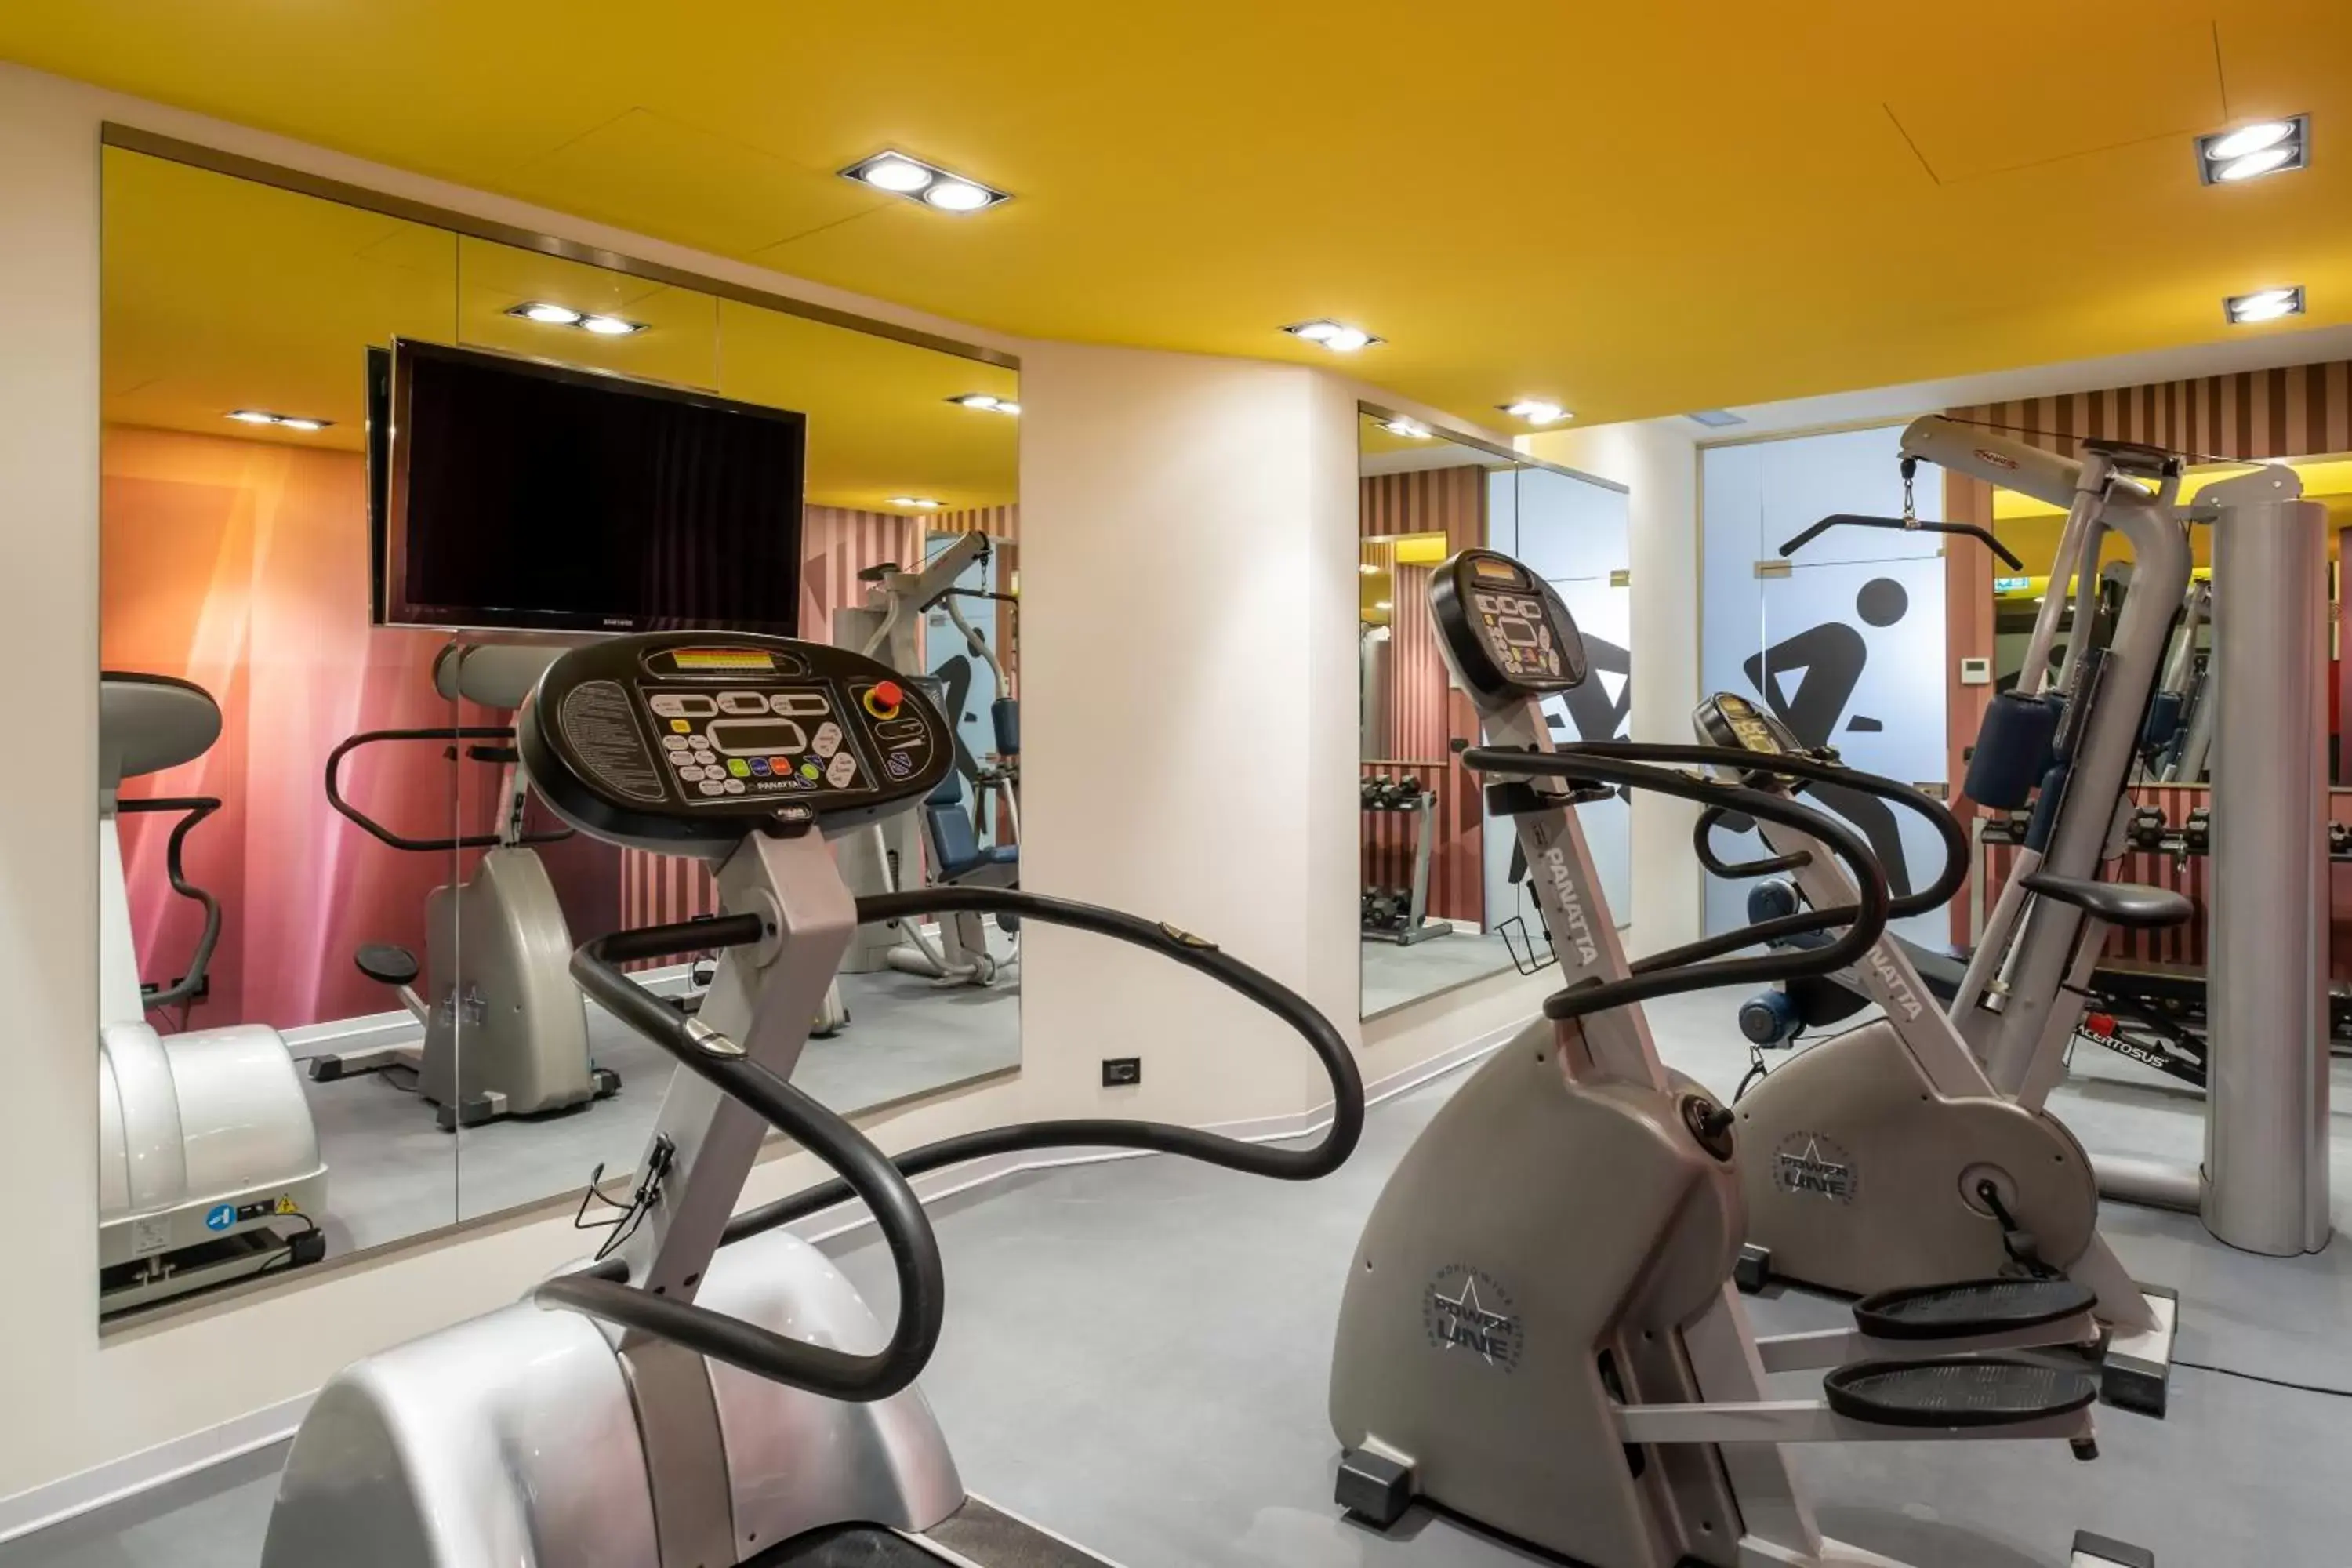 Fitness centre/facilities, Fitness Center/Facilities in Aemilia Hotel Bologna